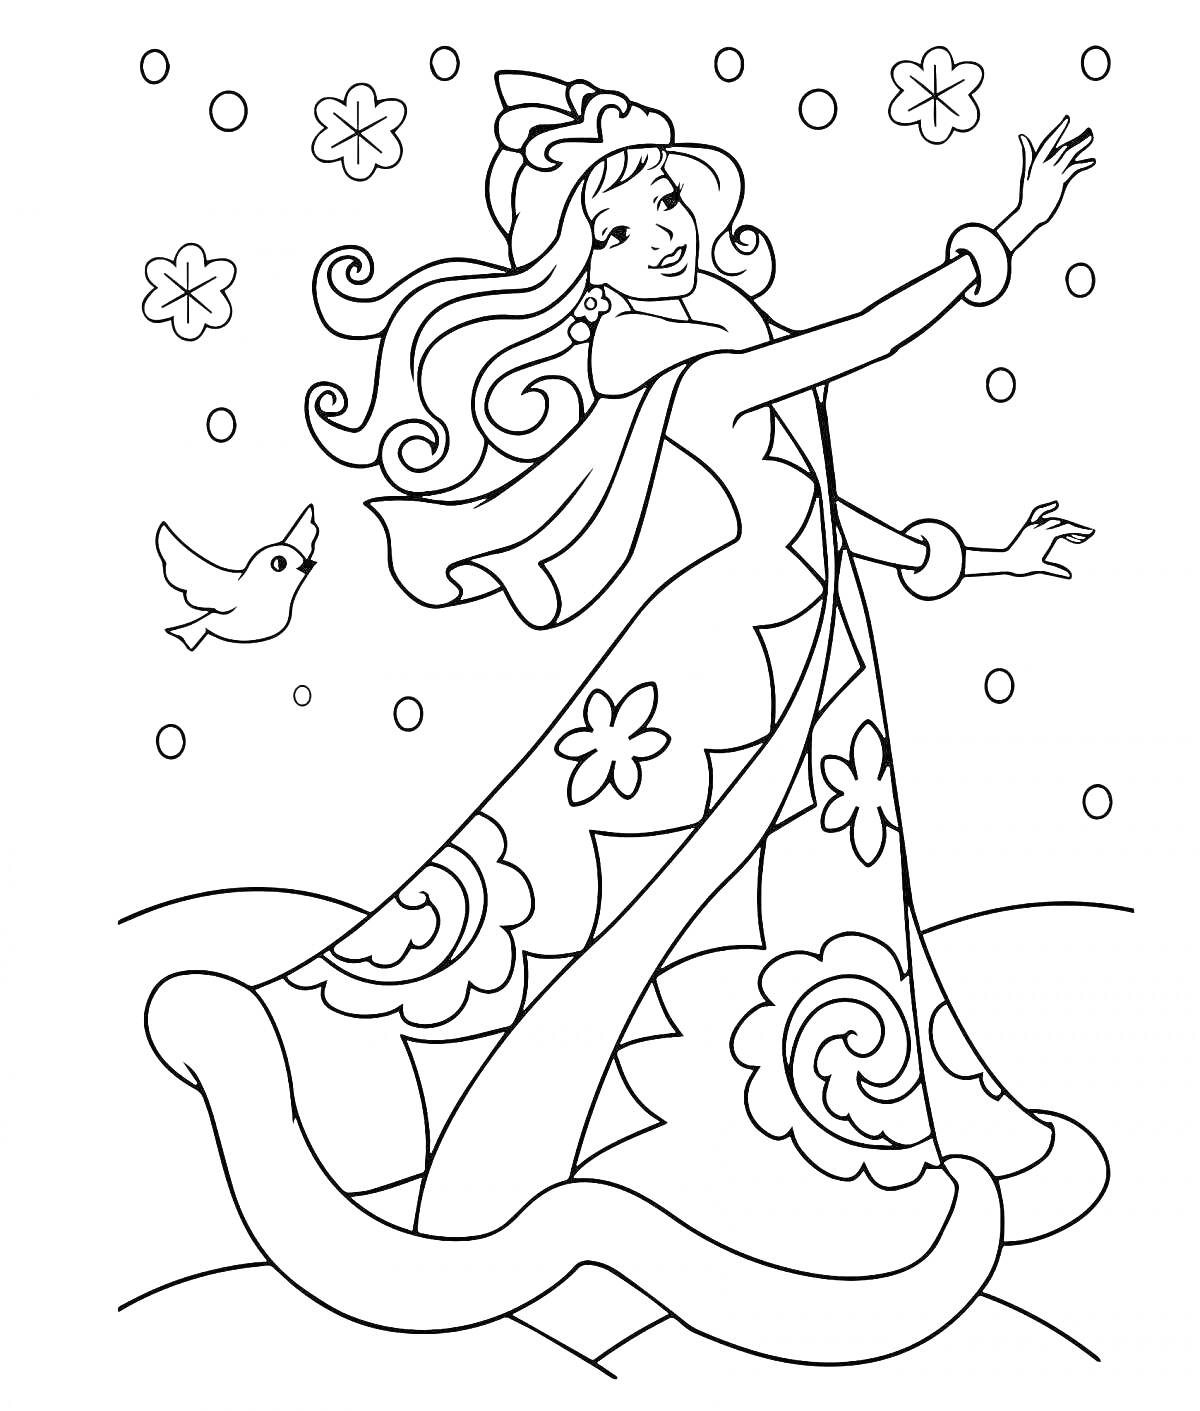 Раскраска Снегурочка с вытянутой рукой, узоры на платье, и снегопад с цветами, птица